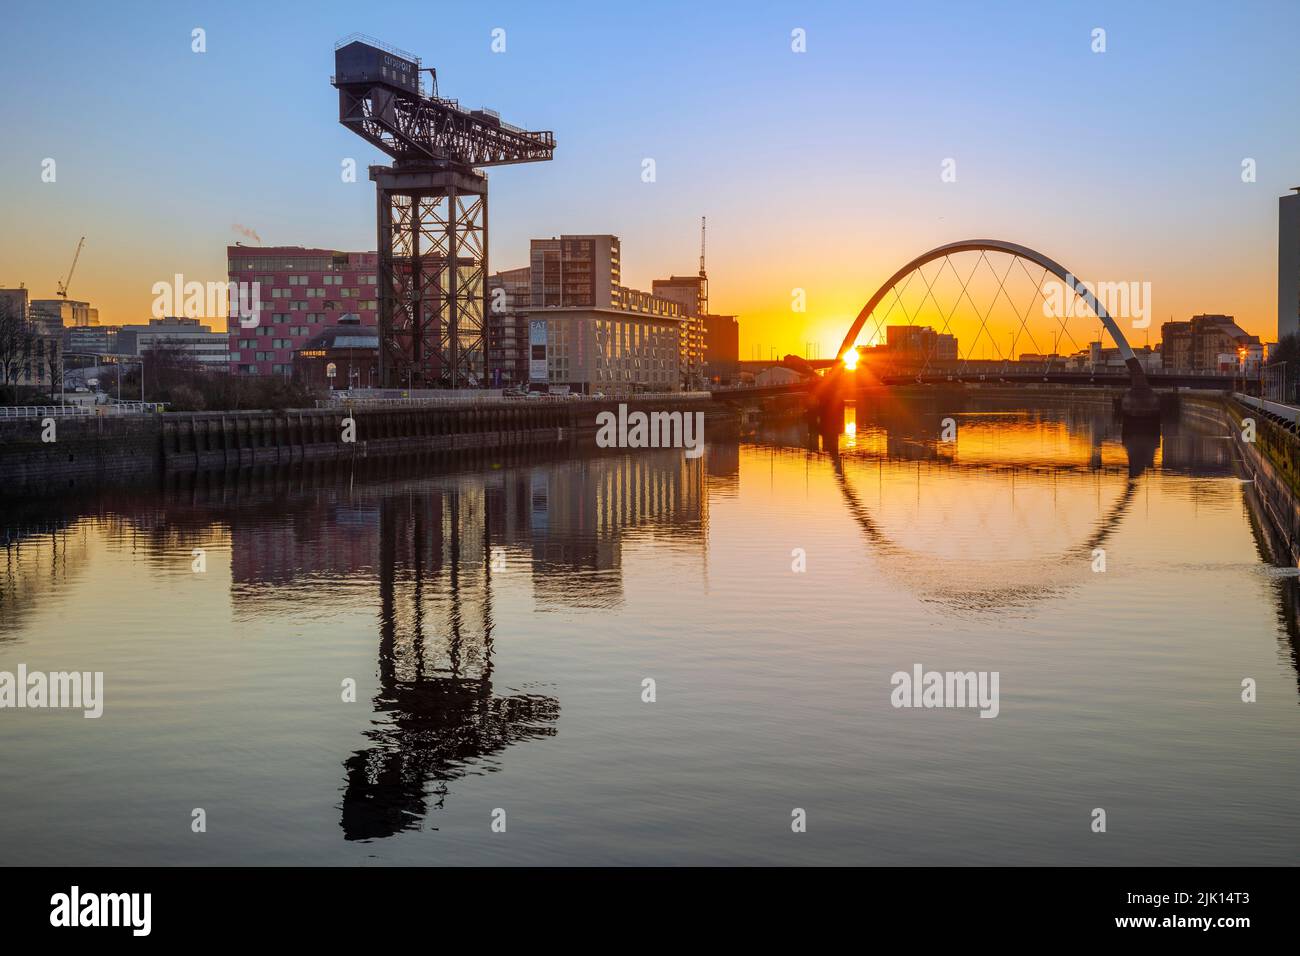 Sonnenaufgang über dem Fluss Clyde, Finnieston Crane, Clyde Arc (Squinty Bridge) River Clyde, Glasgow, Schottland, Vereinigtes Königreich, Europa Stockfoto